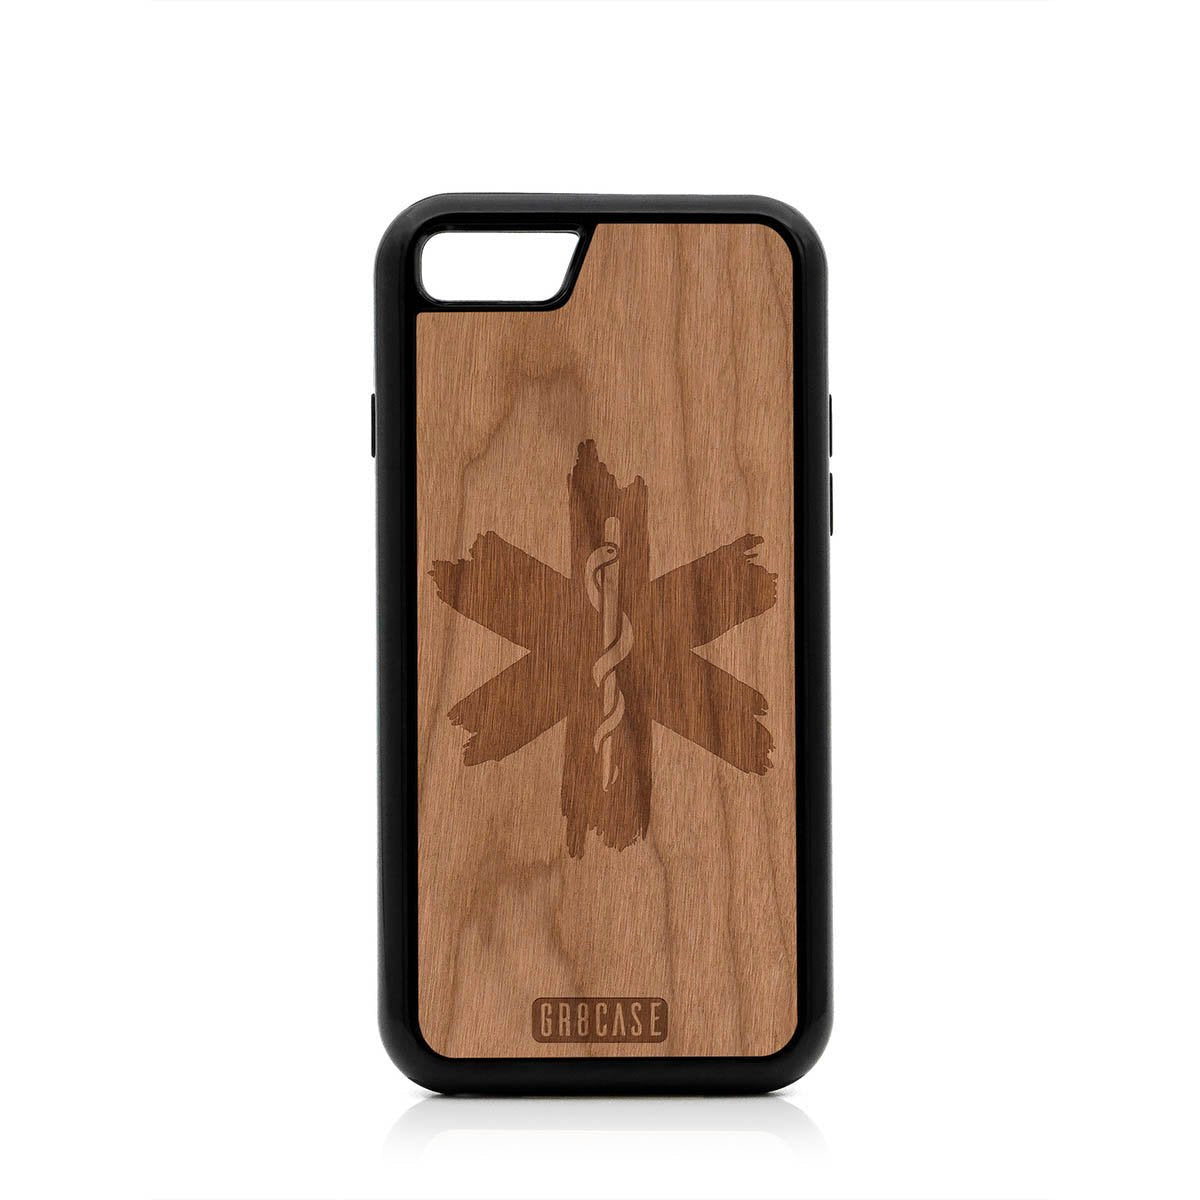 EMT Design Wood Case For iPhone SE 2020 by GR8CASE